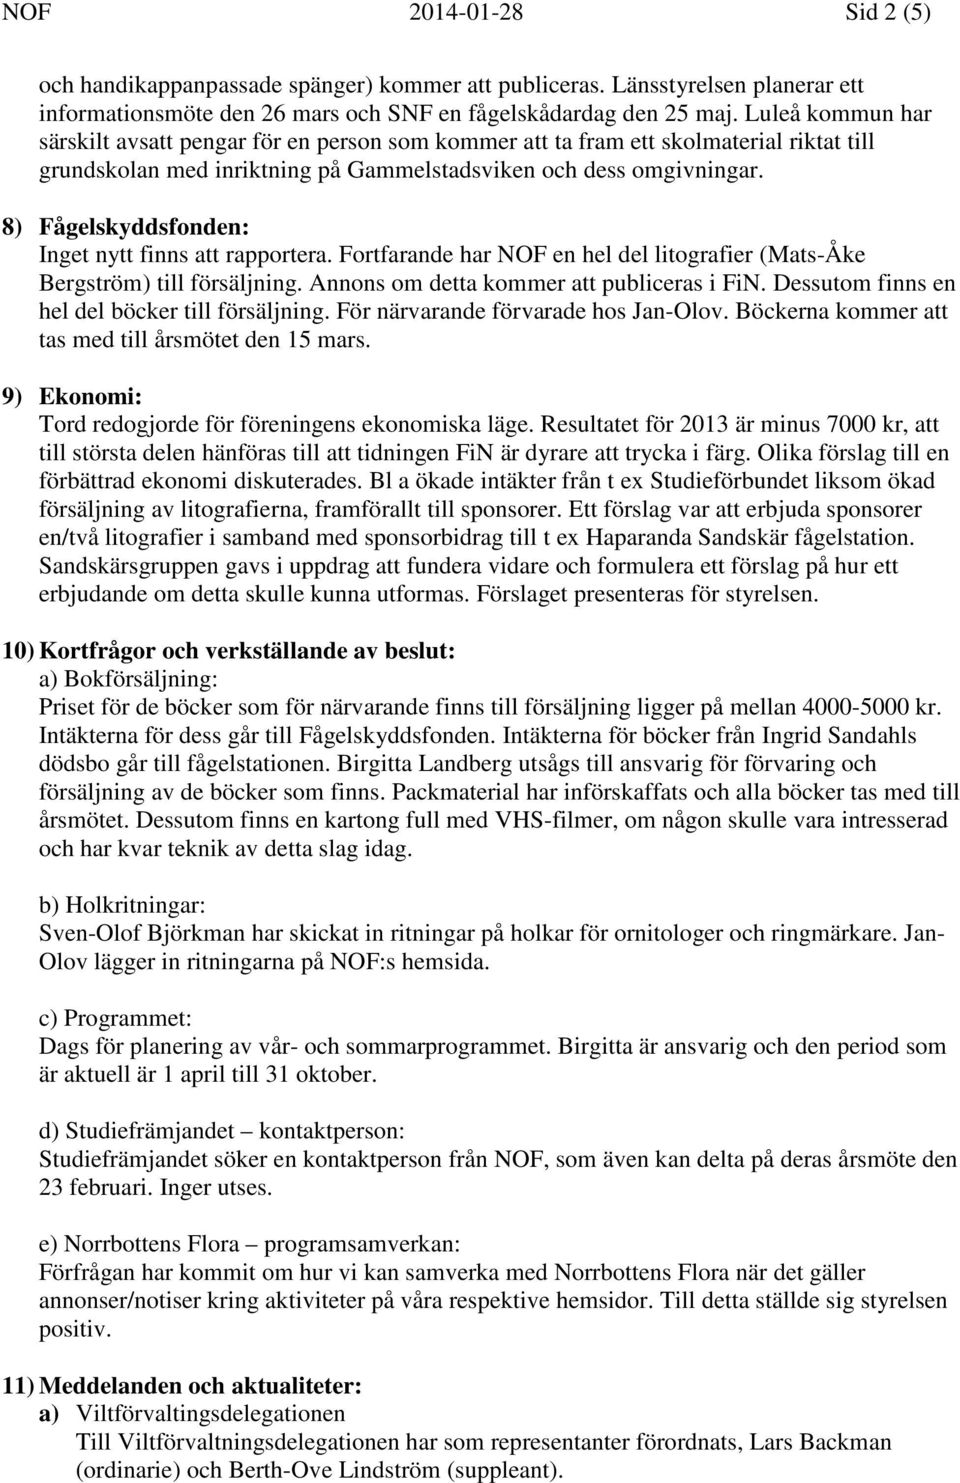 8) Fågelskyddsfonden: Inget nytt finns att rapportera. Fortfarande har NOF en hel del litografier (Mats-Åke Bergström) till försäljning. Annons om detta kommer att publiceras i FiN.